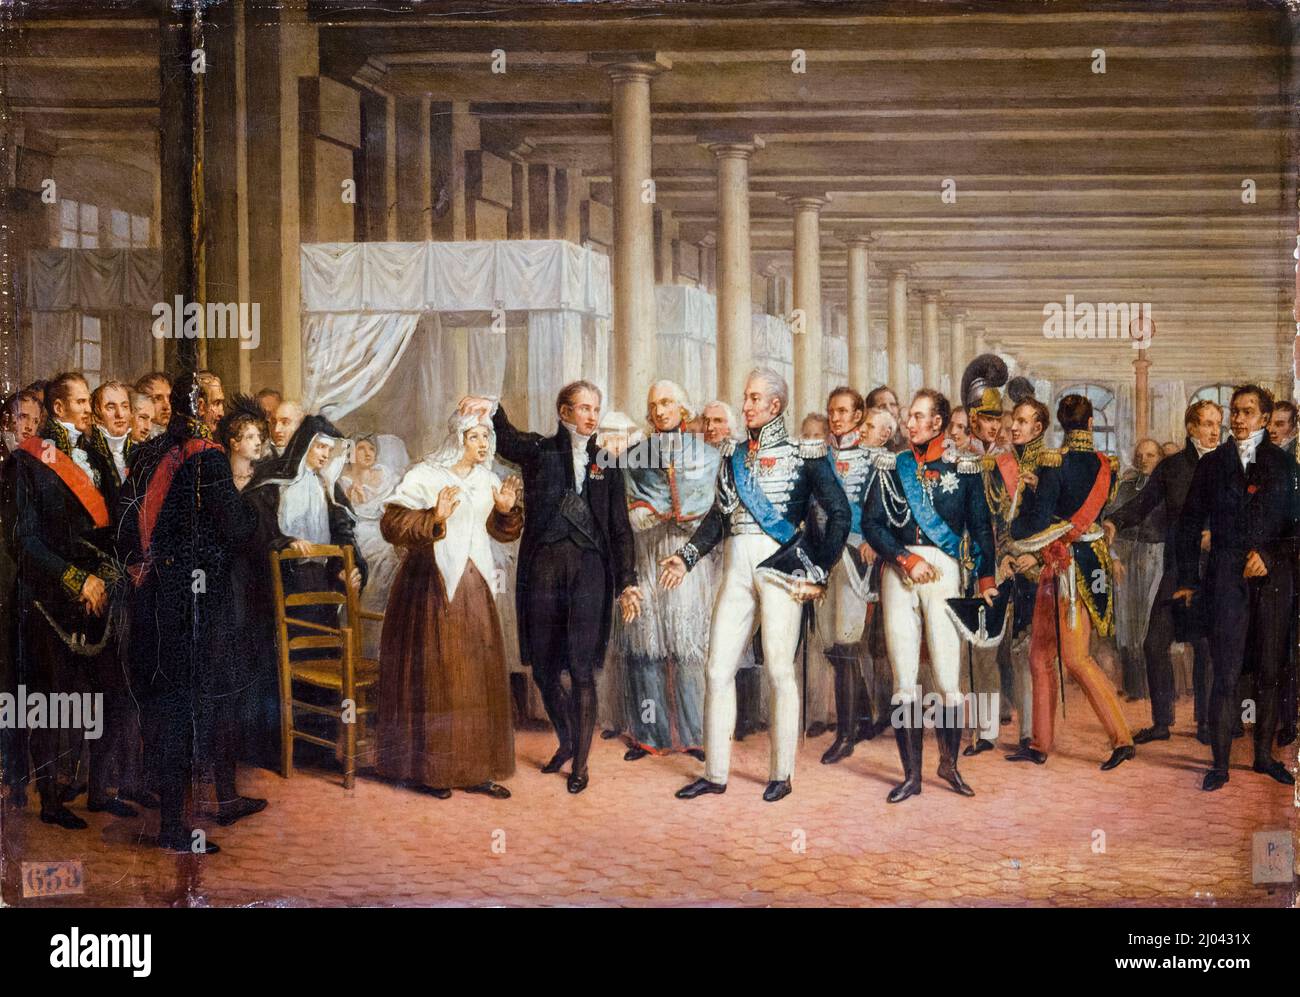 Guillaume Dupuytren (1777-1835), französischer Chirurg am Hôtel-Dieu, der Charles X. (1757-1836), König von Frankreich, nach einer Augenoperation mit einem Patienten überreicht, Öl auf Leinwand, Gemälde eines unbekannten Künstlers, um 1825 Stockfoto